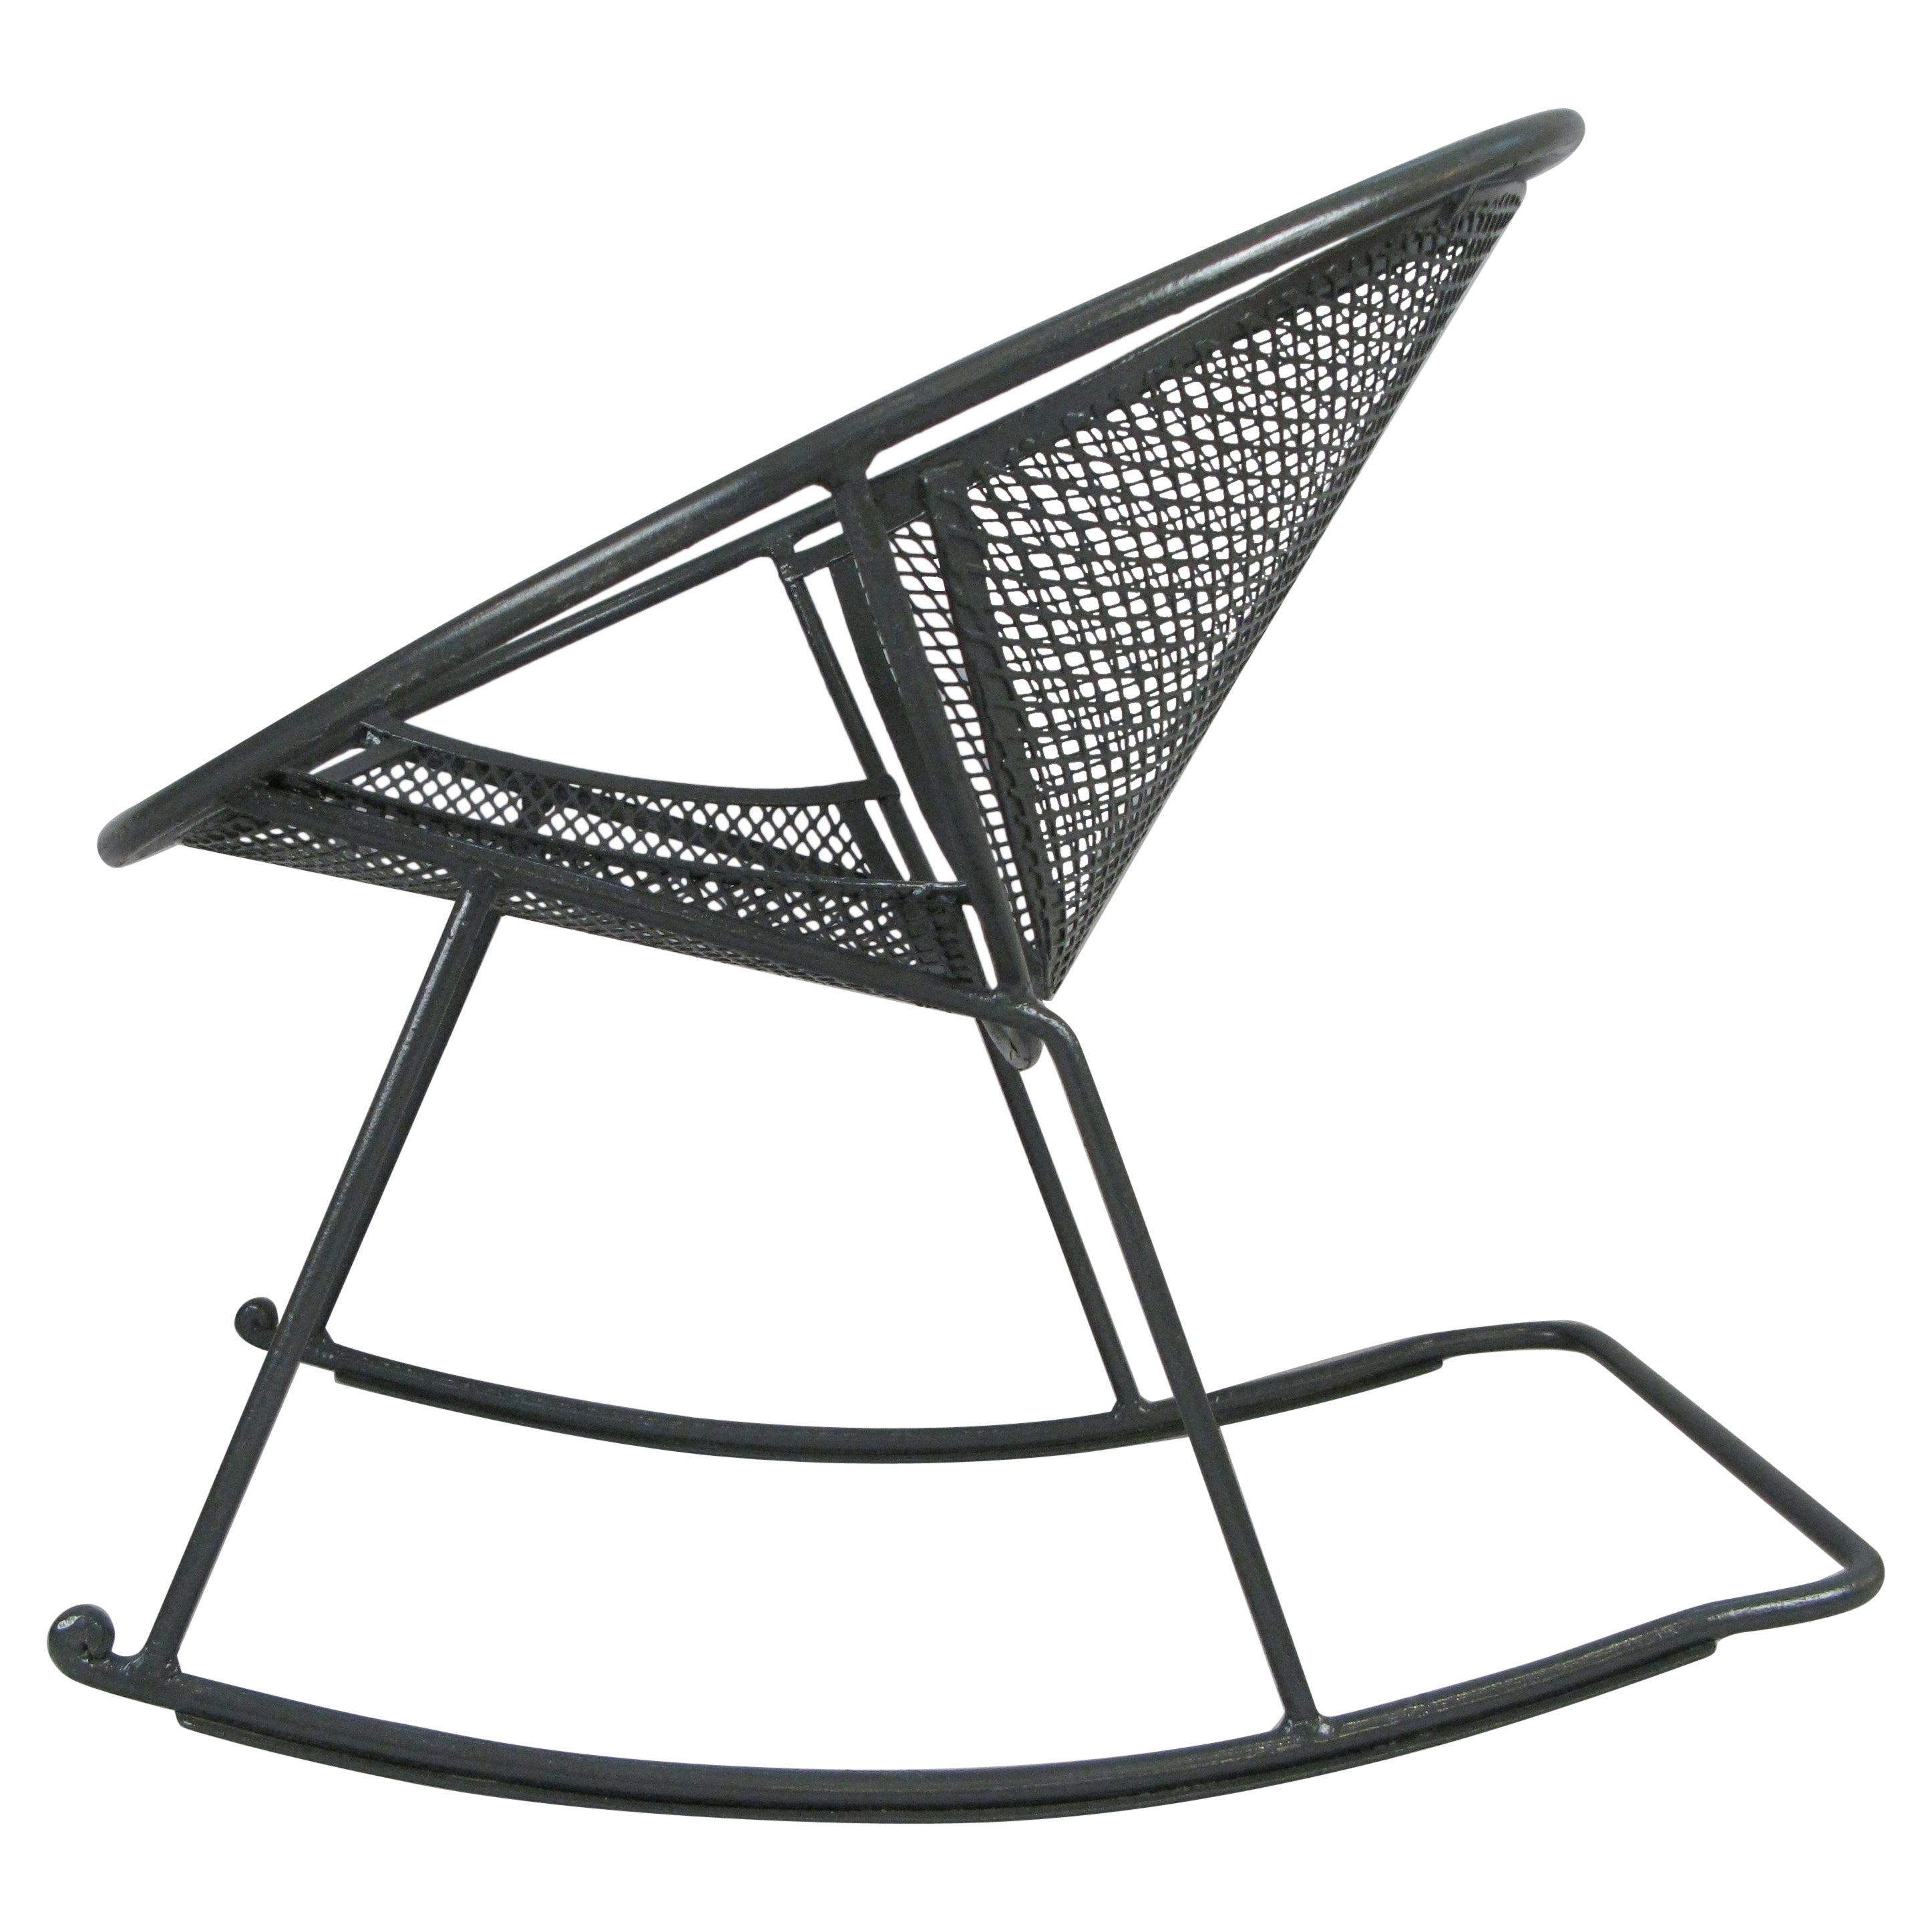 Rare Salterini 'Radar' Wrought Iron Rocking Chair